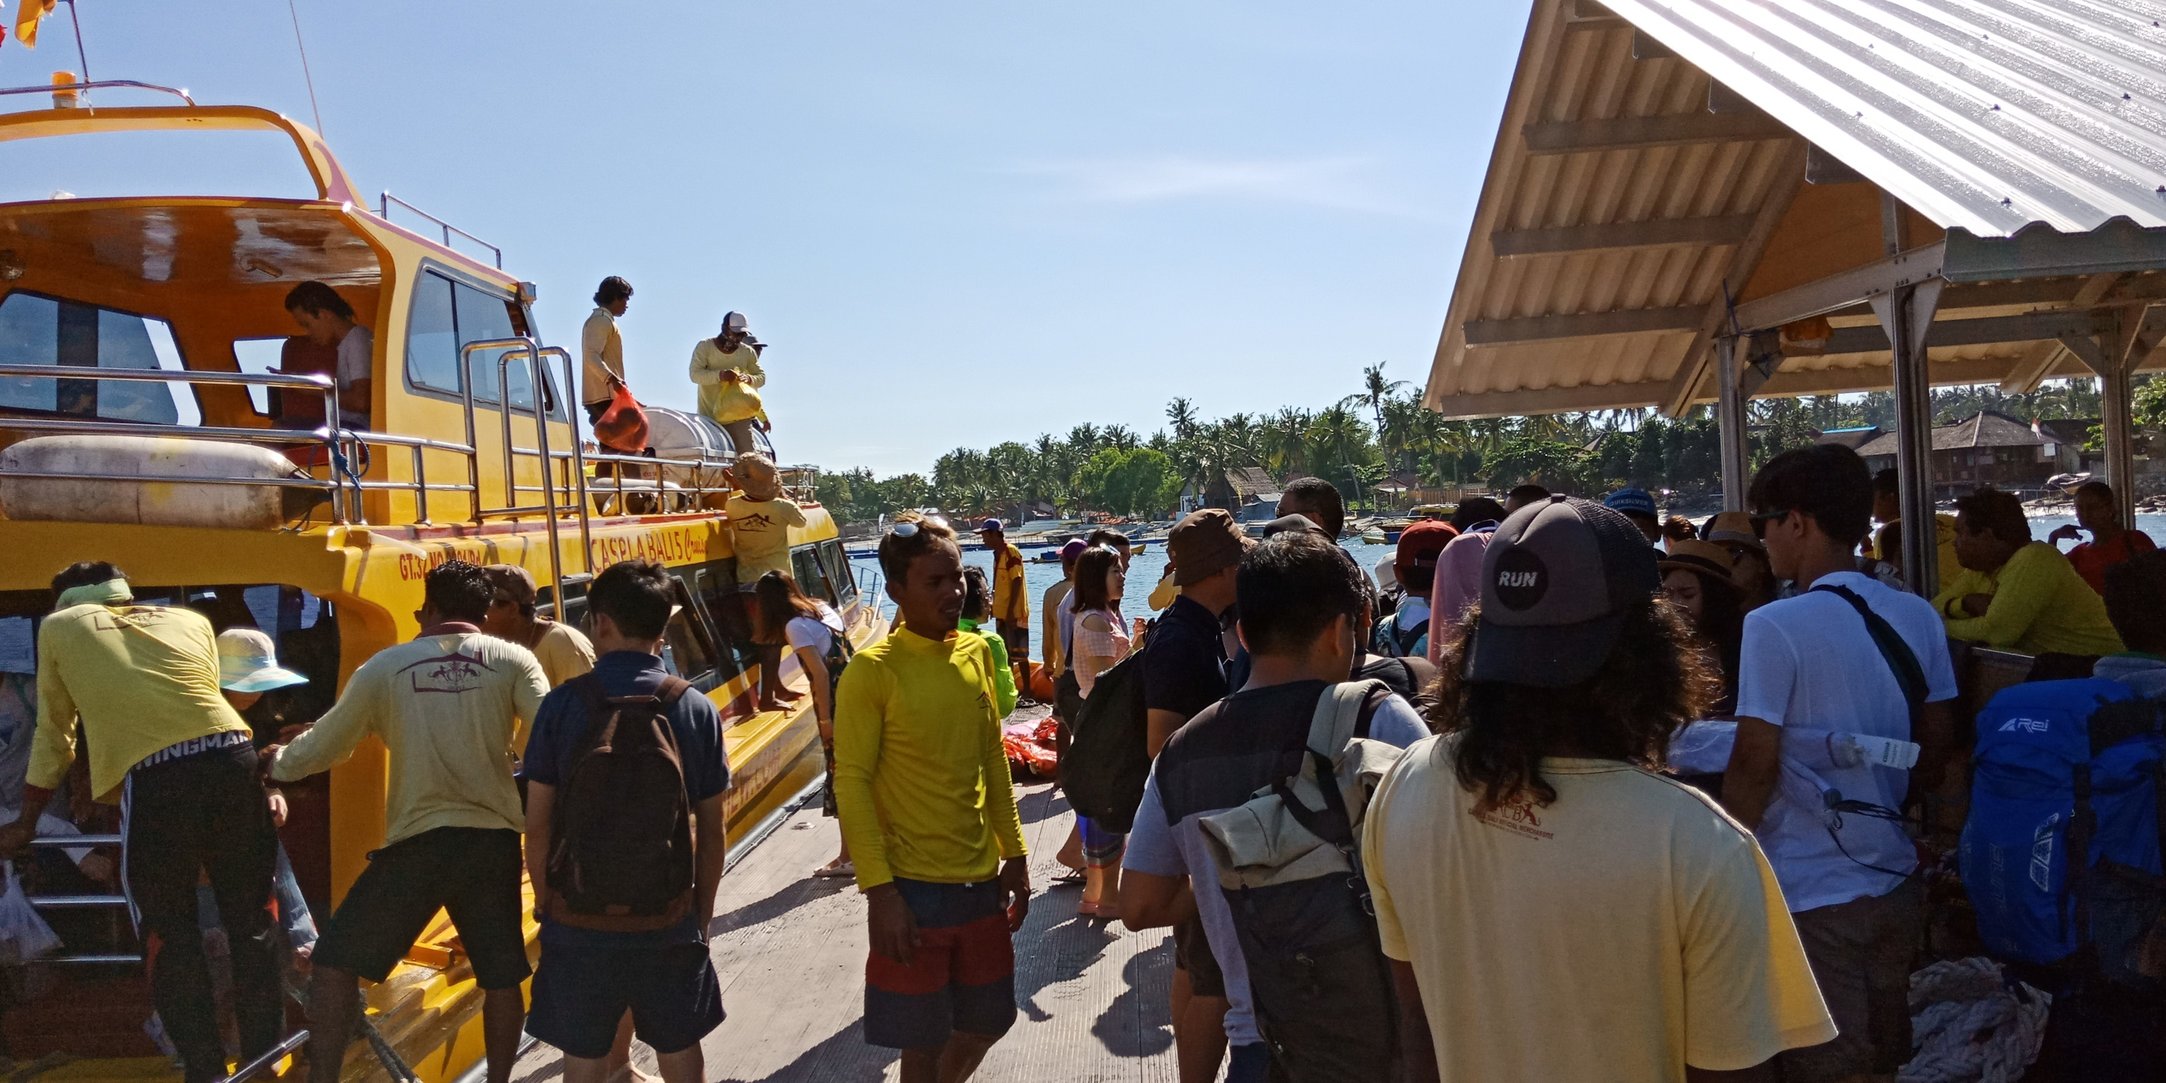 Salah Satu Fast Boat Penyeberangan Sanur (c) Rosita/Travelingyuk